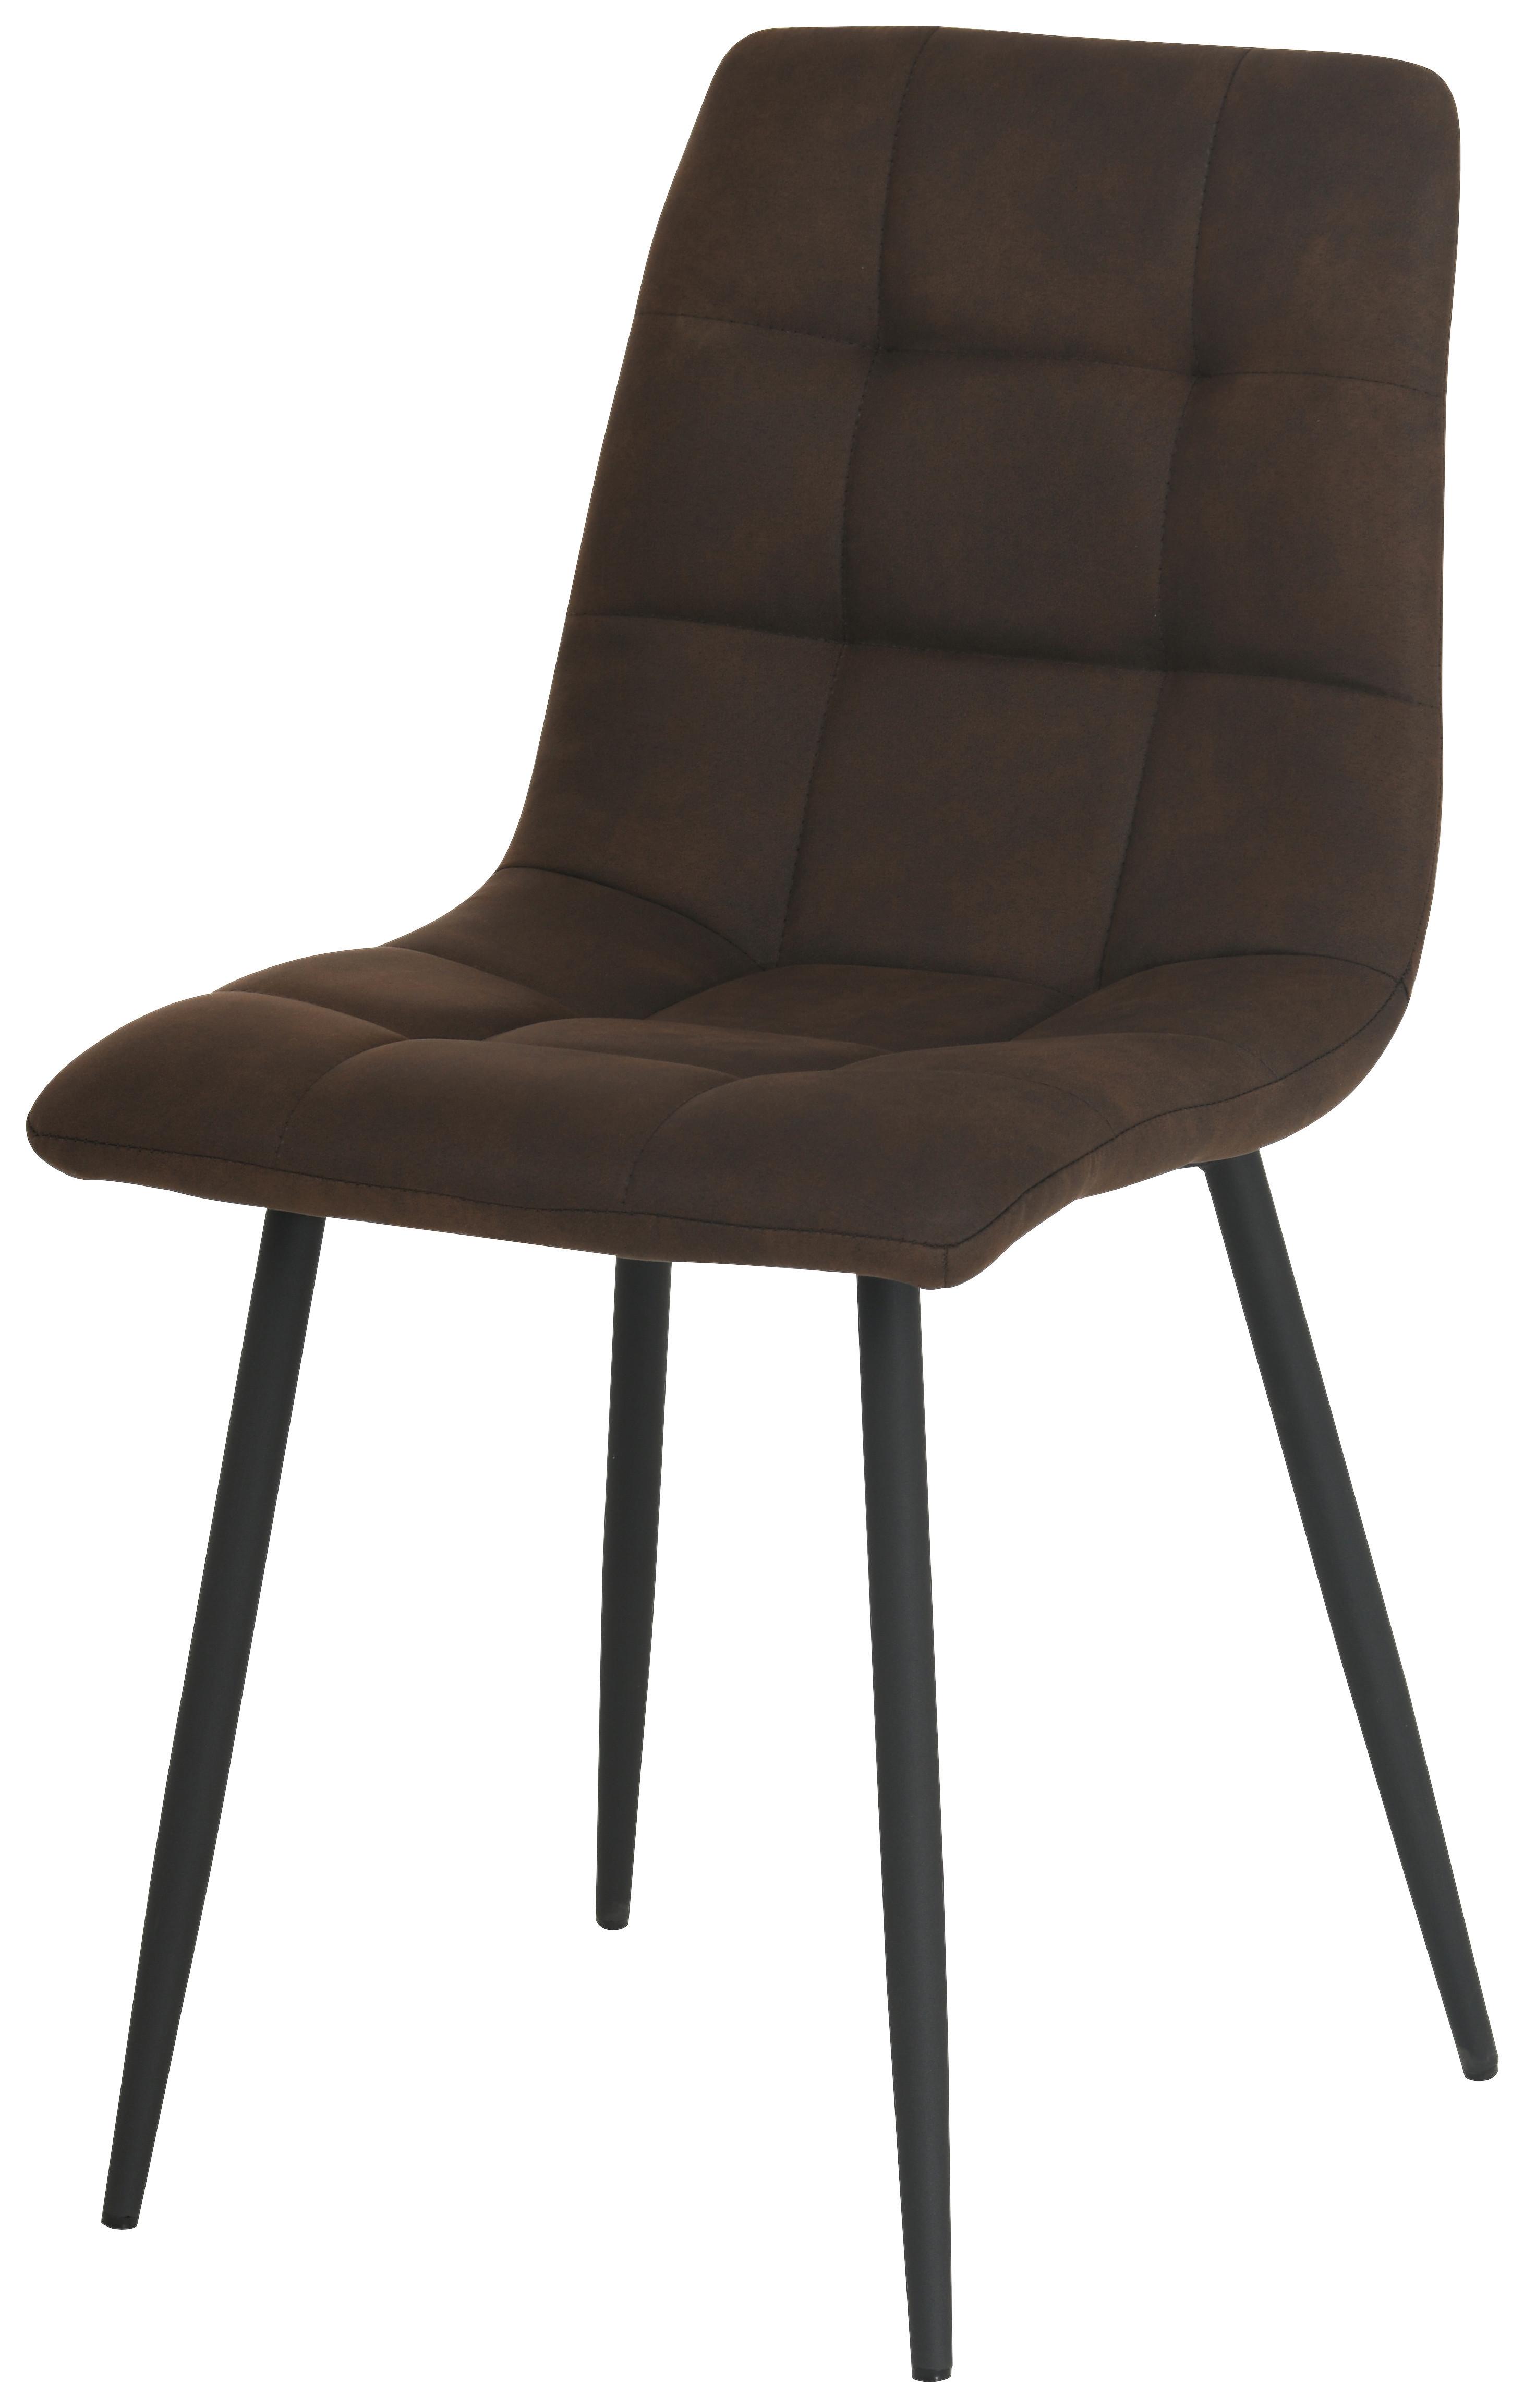 Četveronožna Stolica Zürs - smeđa/crna, Konventionell, drvo/metal (45/88cm)